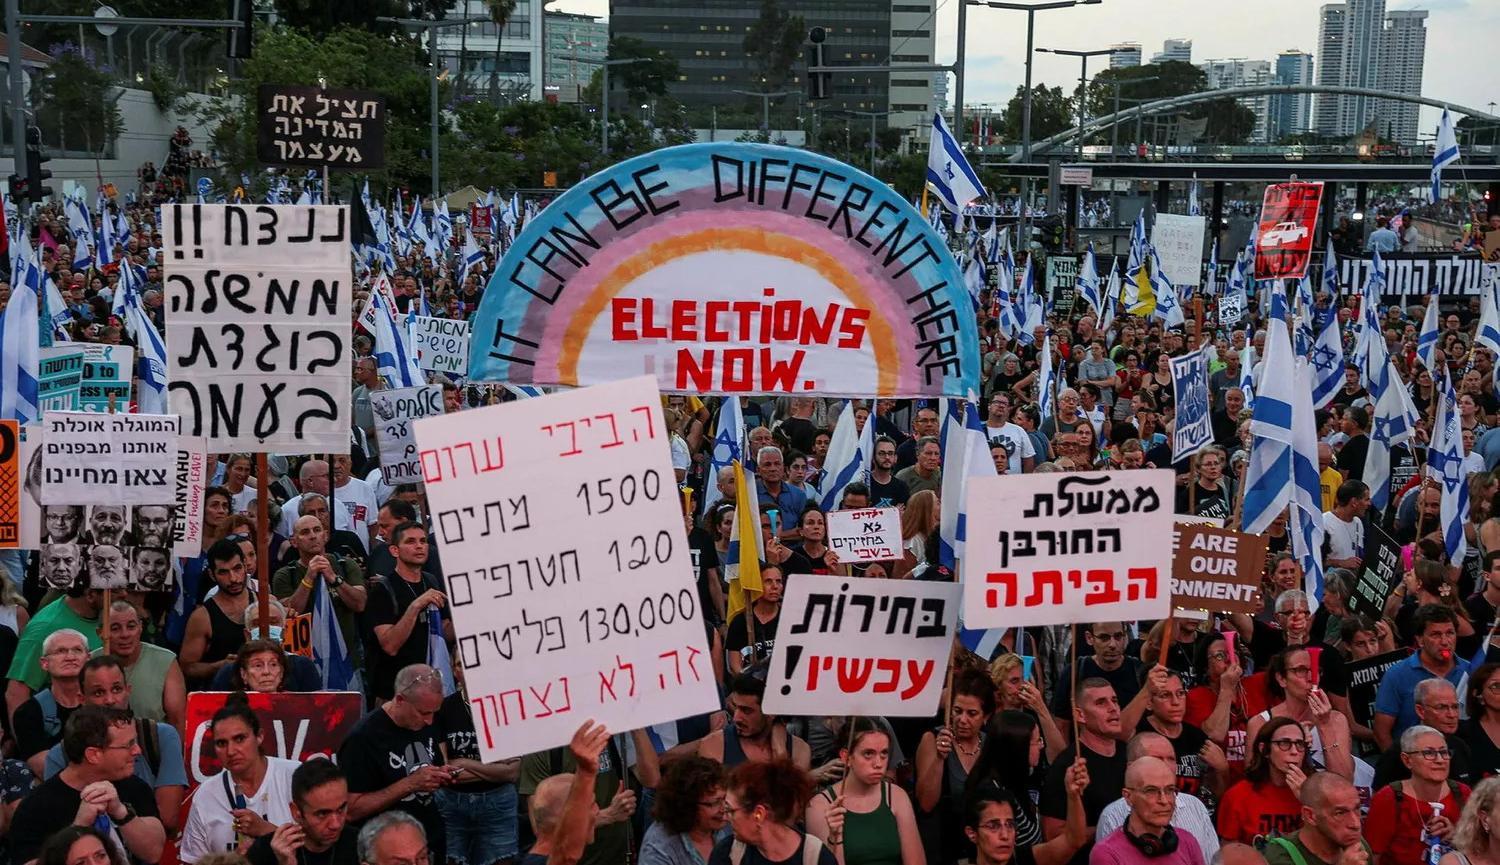 تظاهرة تطالب بتقديم موعد الانتخابات وتحرير المخطوفين في تل أبيب  في الأمس (نقلاً عن "هآرتس")